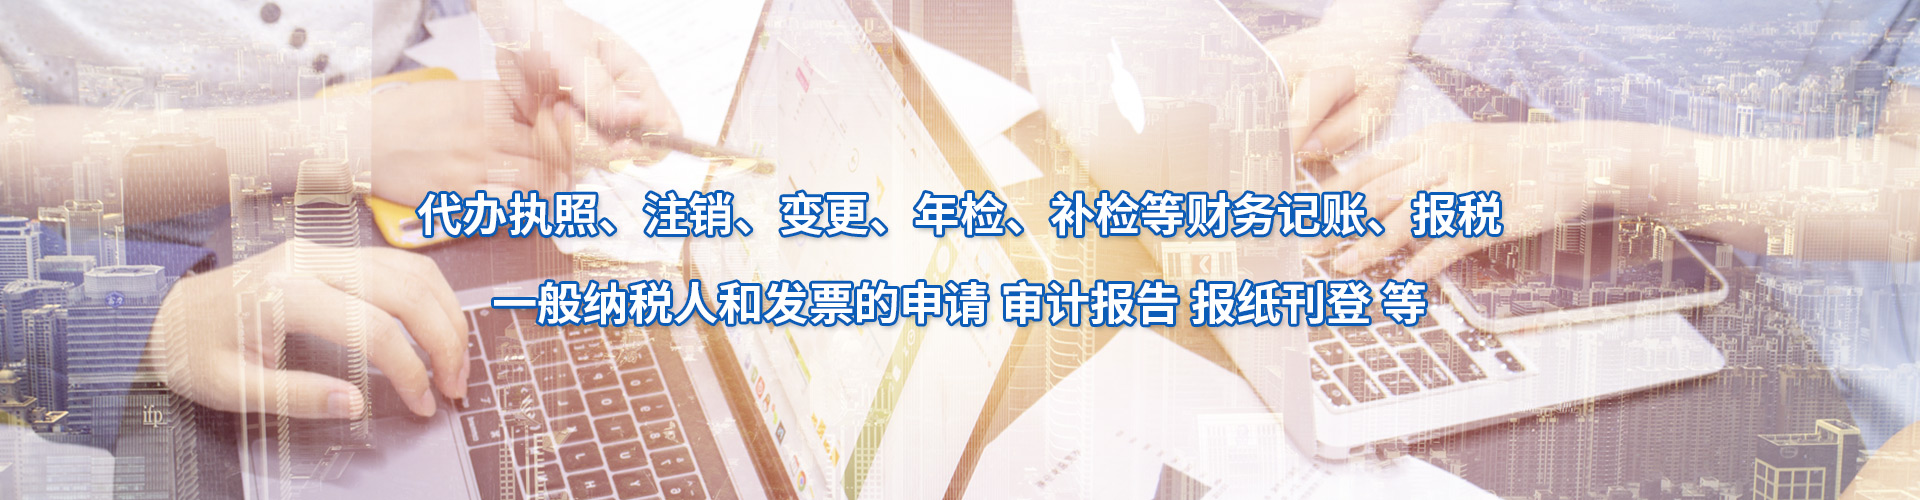 北京工商注册地址解除异常办理条件 办理周期短